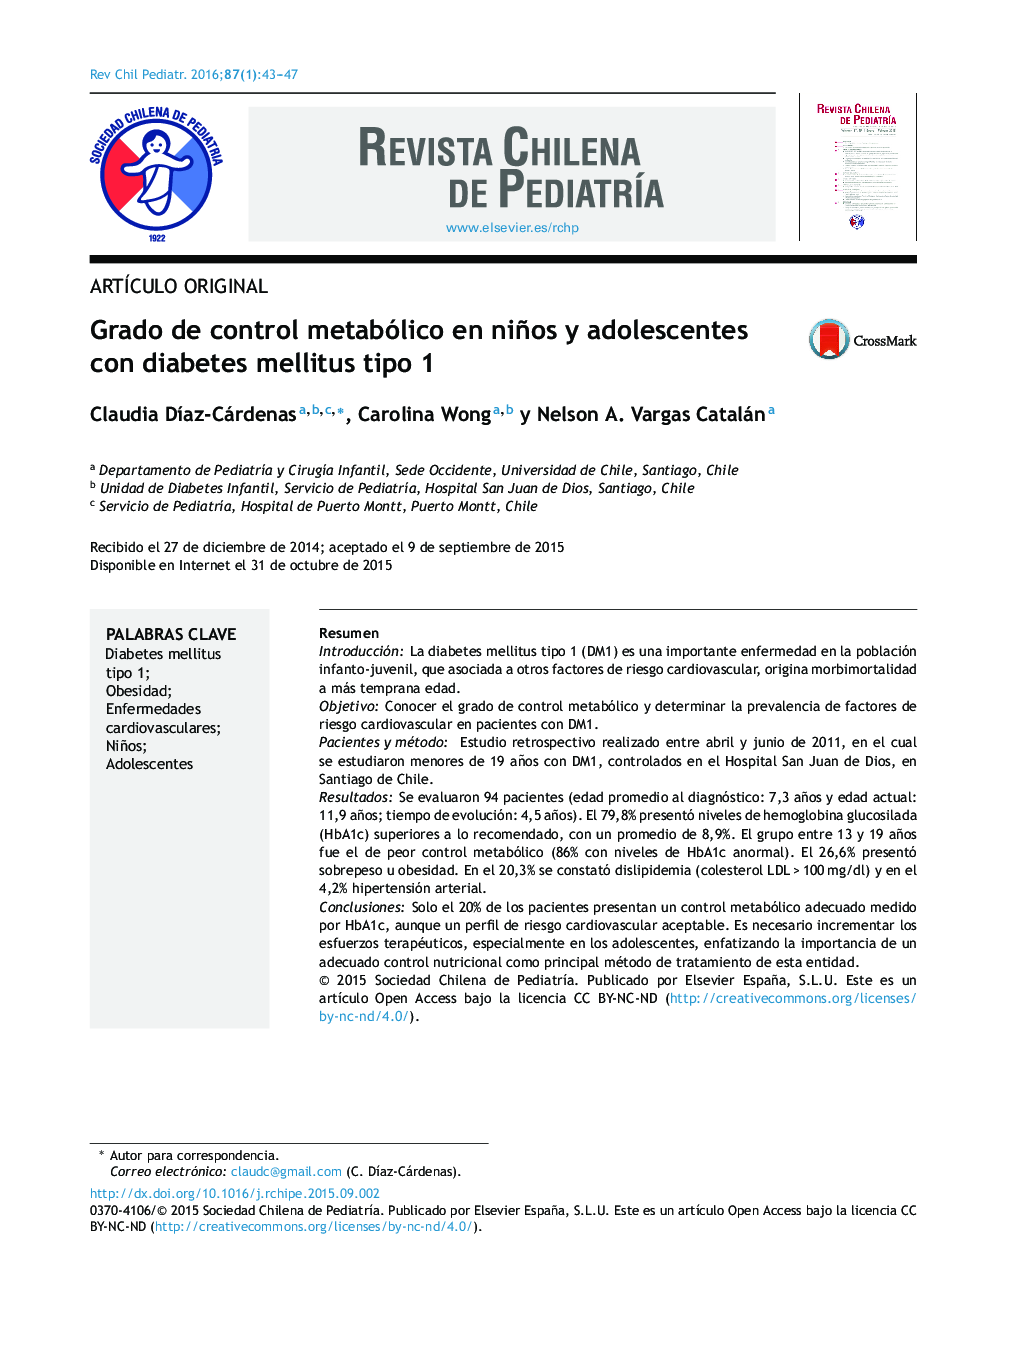 درجه کنترل متابولیک در افراد مبتلا به دیابت نوع 1 و نوجوانان مبتلا به دیابت نوع 1 